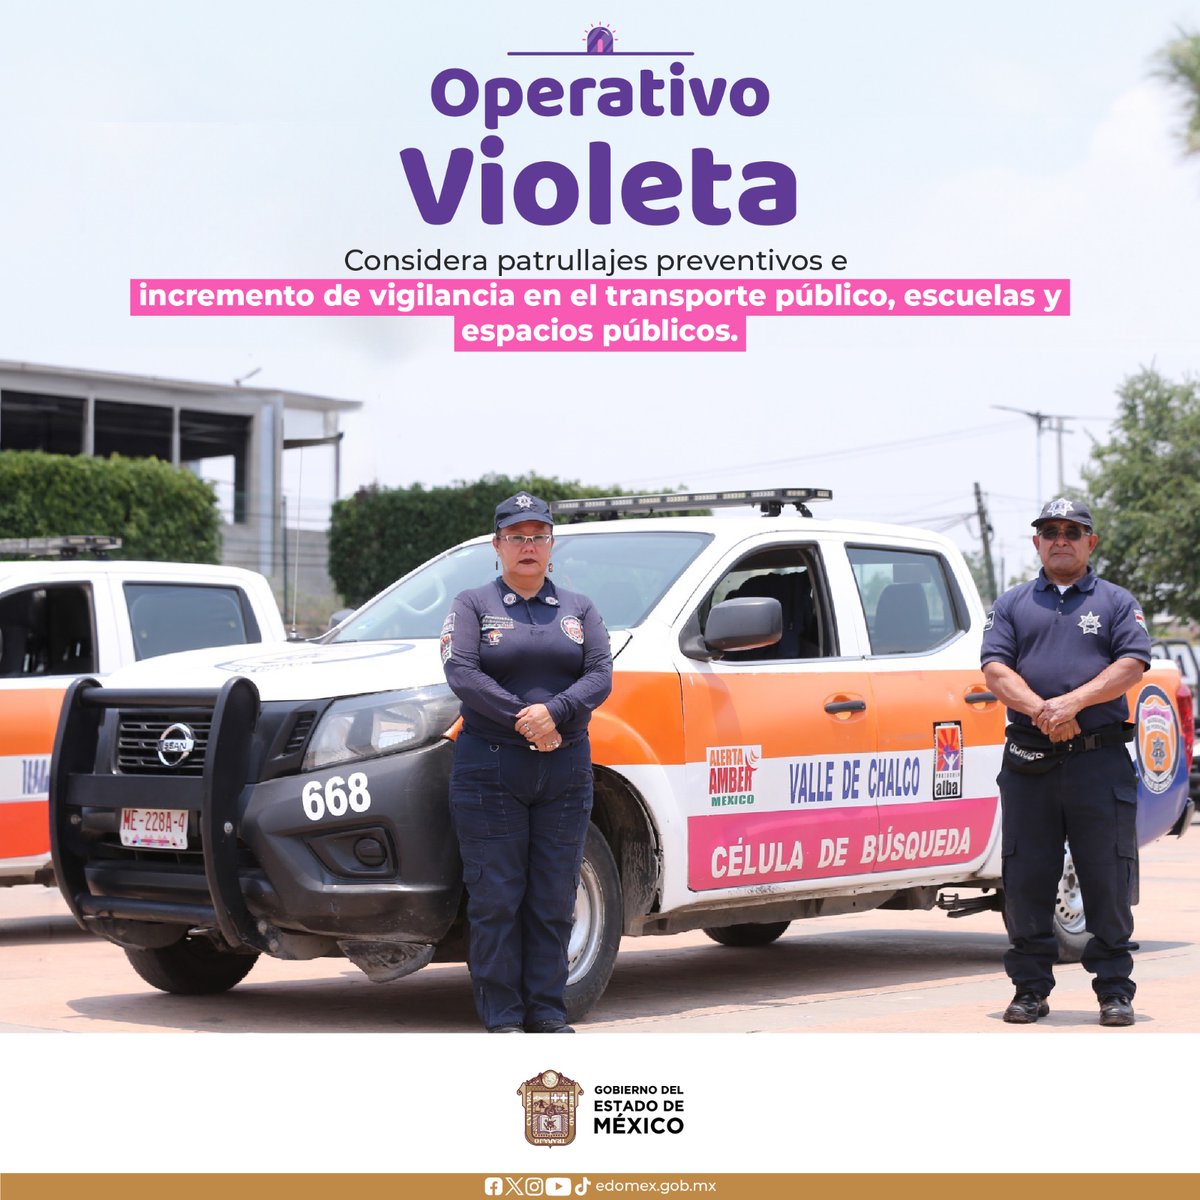 Como parte del Operativo Violeta, en el Estado de México se implementan patrullajes preventivos y se incrementa la vigilancia en el transporte público, así como en escuelas y en espacios públicos, con el objetivo de proteger a las mexiquenses.